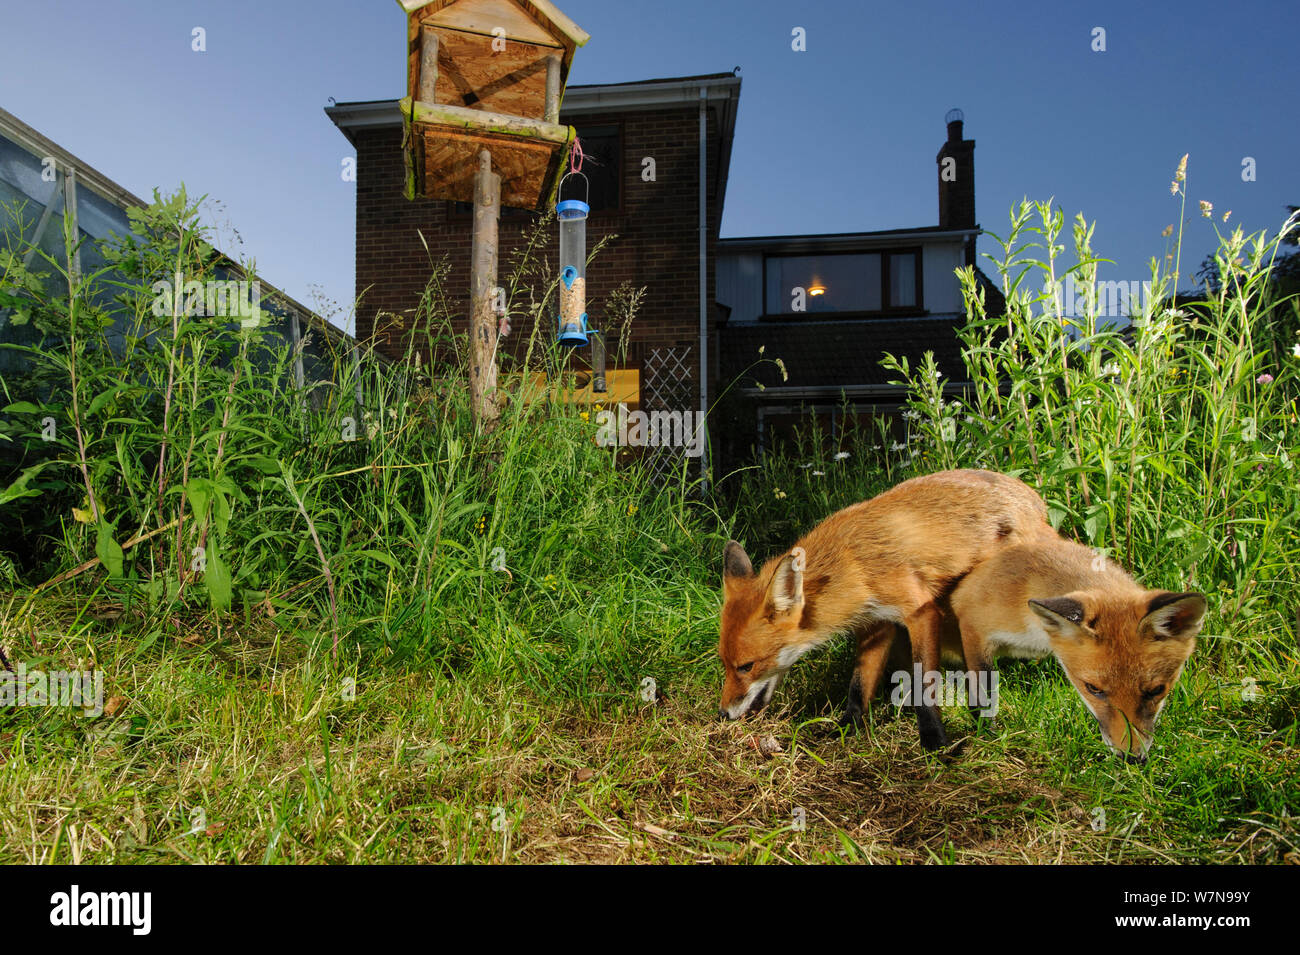 Red Foxes (Vulpes vulpes) Futter für scaps in der Stadt Haus Garten verwaltet für widlife. Vixen und Cub. Kent, Großbritannien, Juni. Kamera trap Bild. Eigentum veröffentlicht. Stockfoto